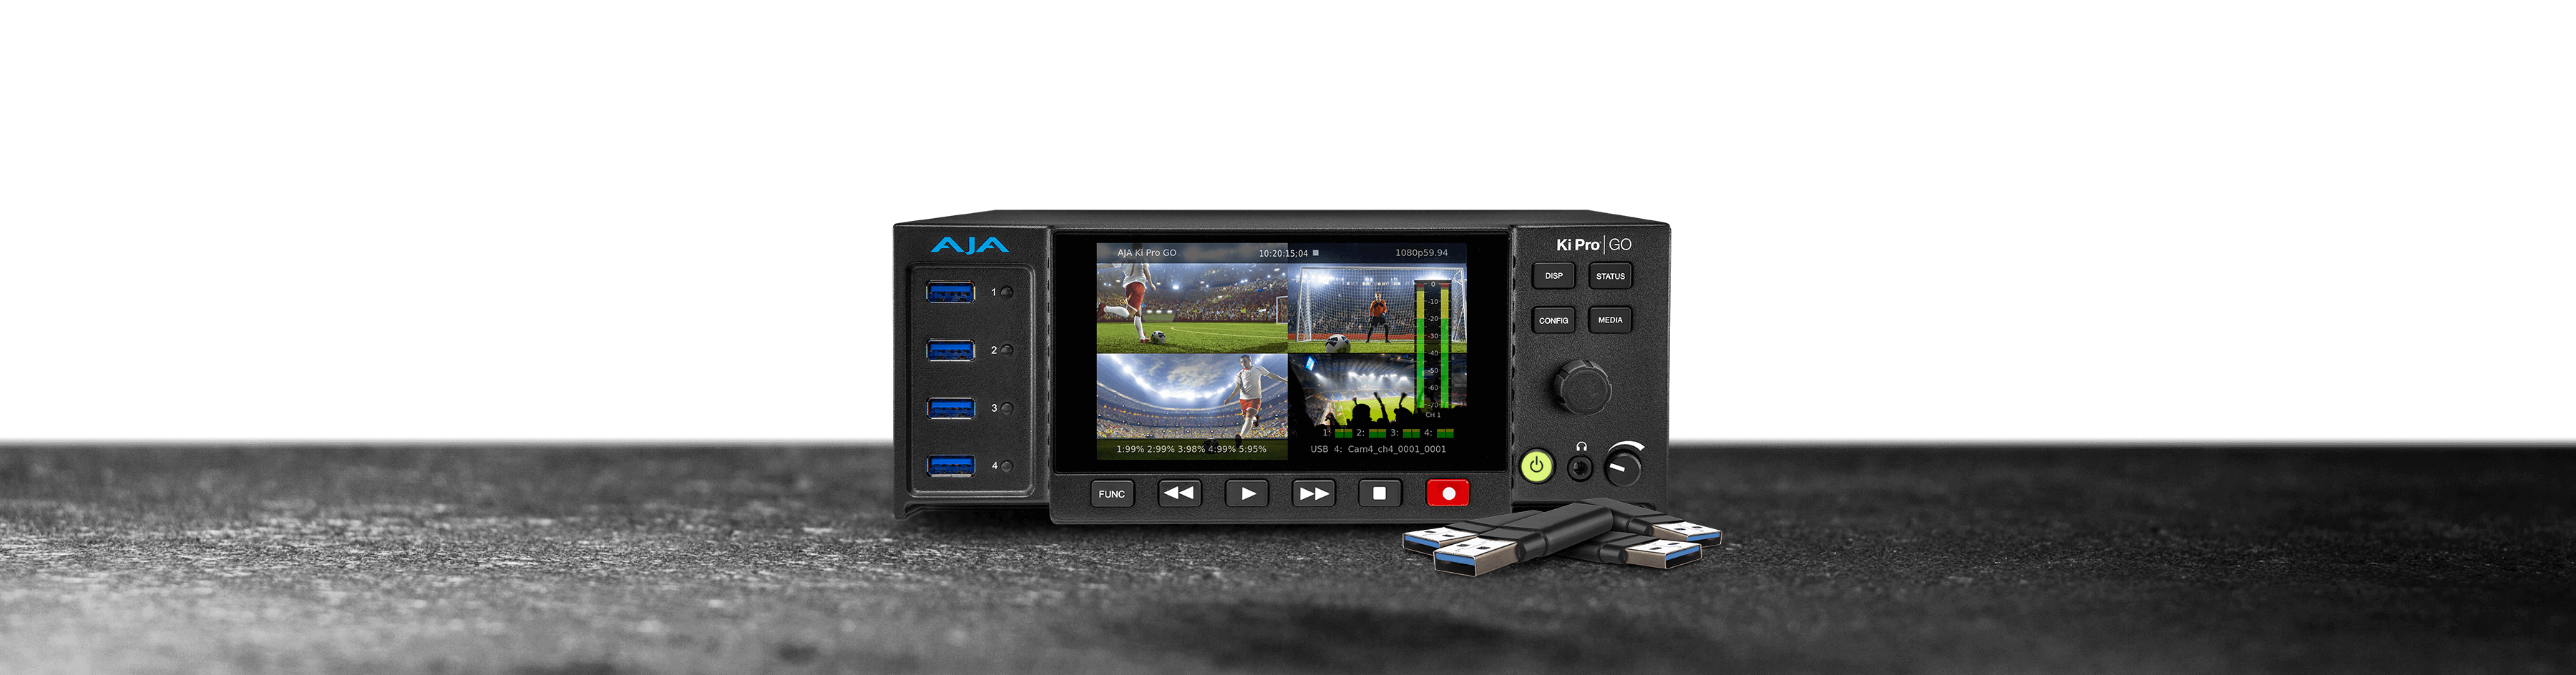 AJA PAK256 256GB SSD Video Media Card Module for Ki Pro Quad Ultra/4K/2K/HD Cion 